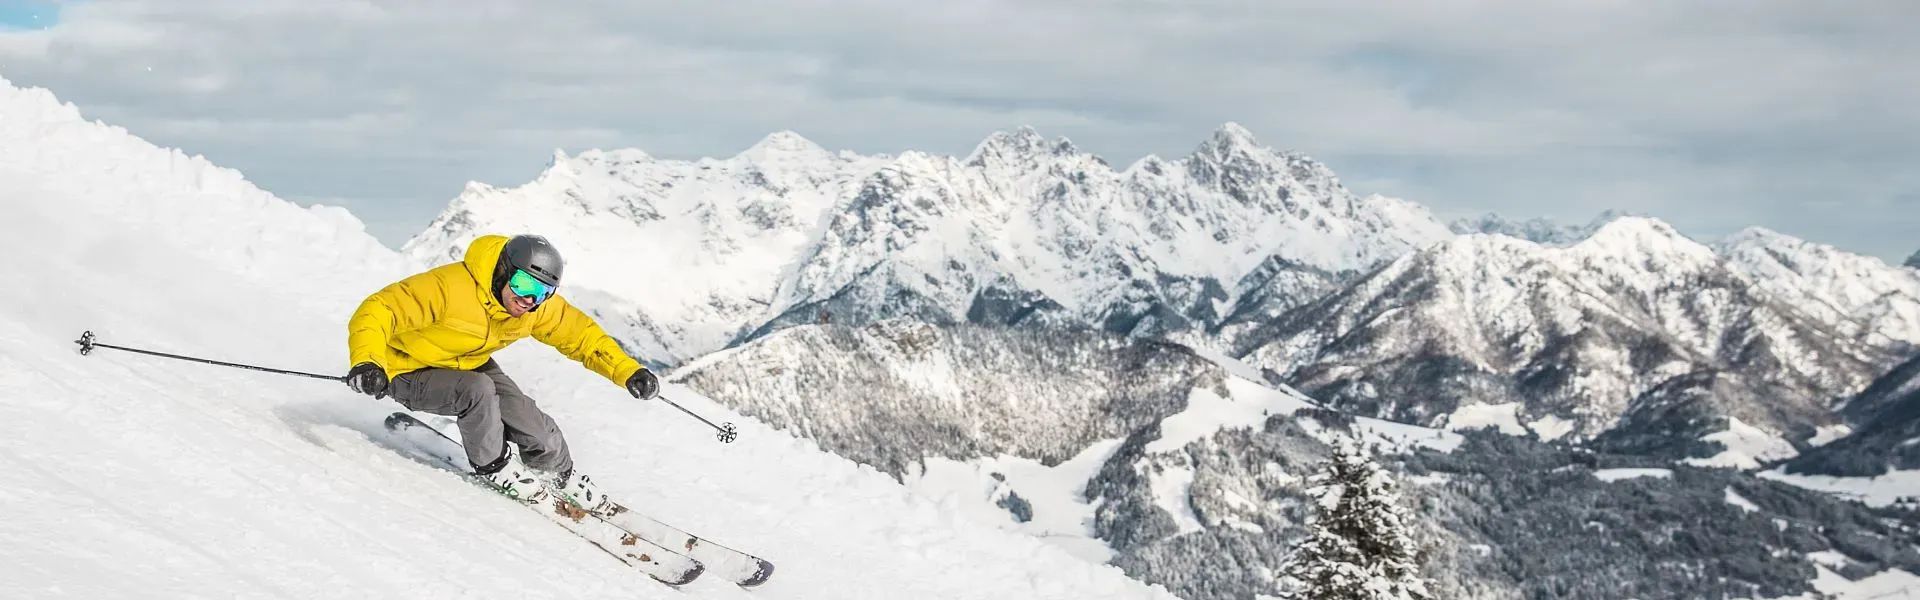 Kitzbueheler-Alpen-winter-Skifahrer-auf-Piste-c-mirja-geh-eye5